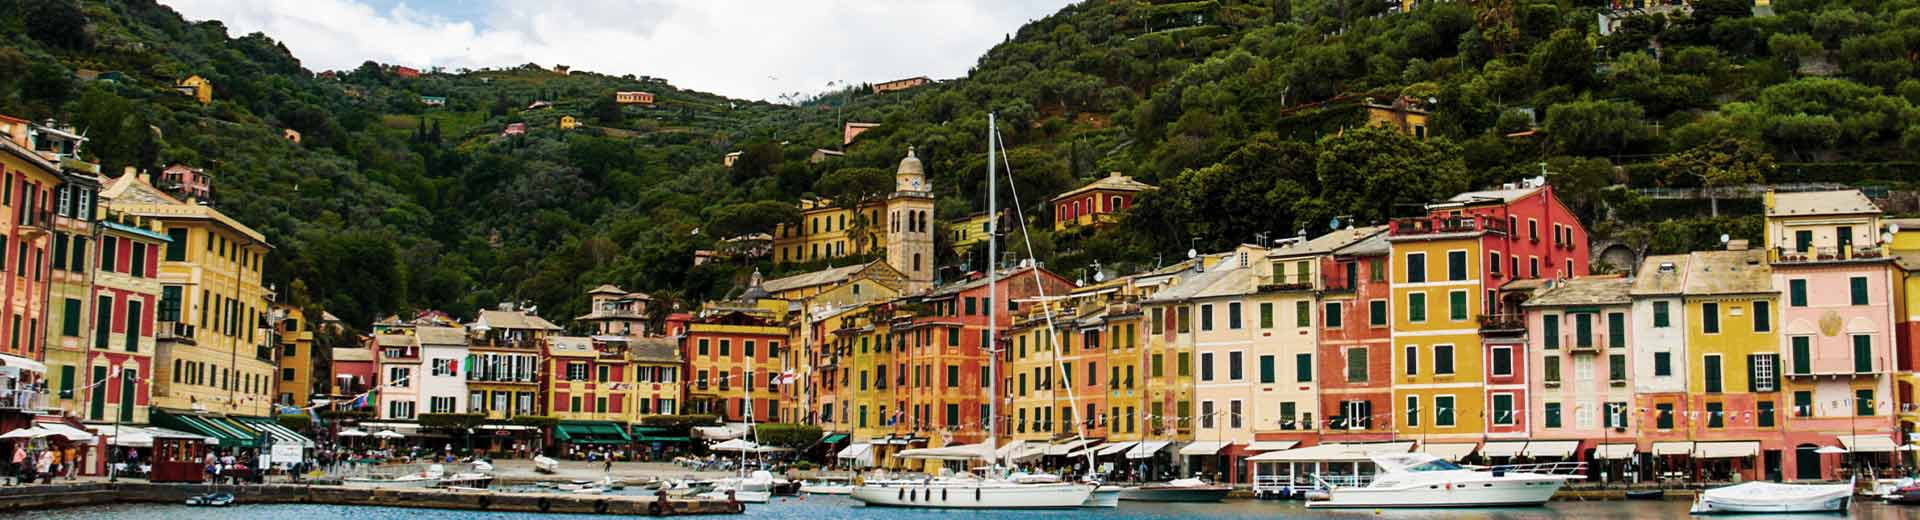 Die schönen und farbenfrohen Gebäude von Genua erstreckten sich entlang der Uferpromenade.